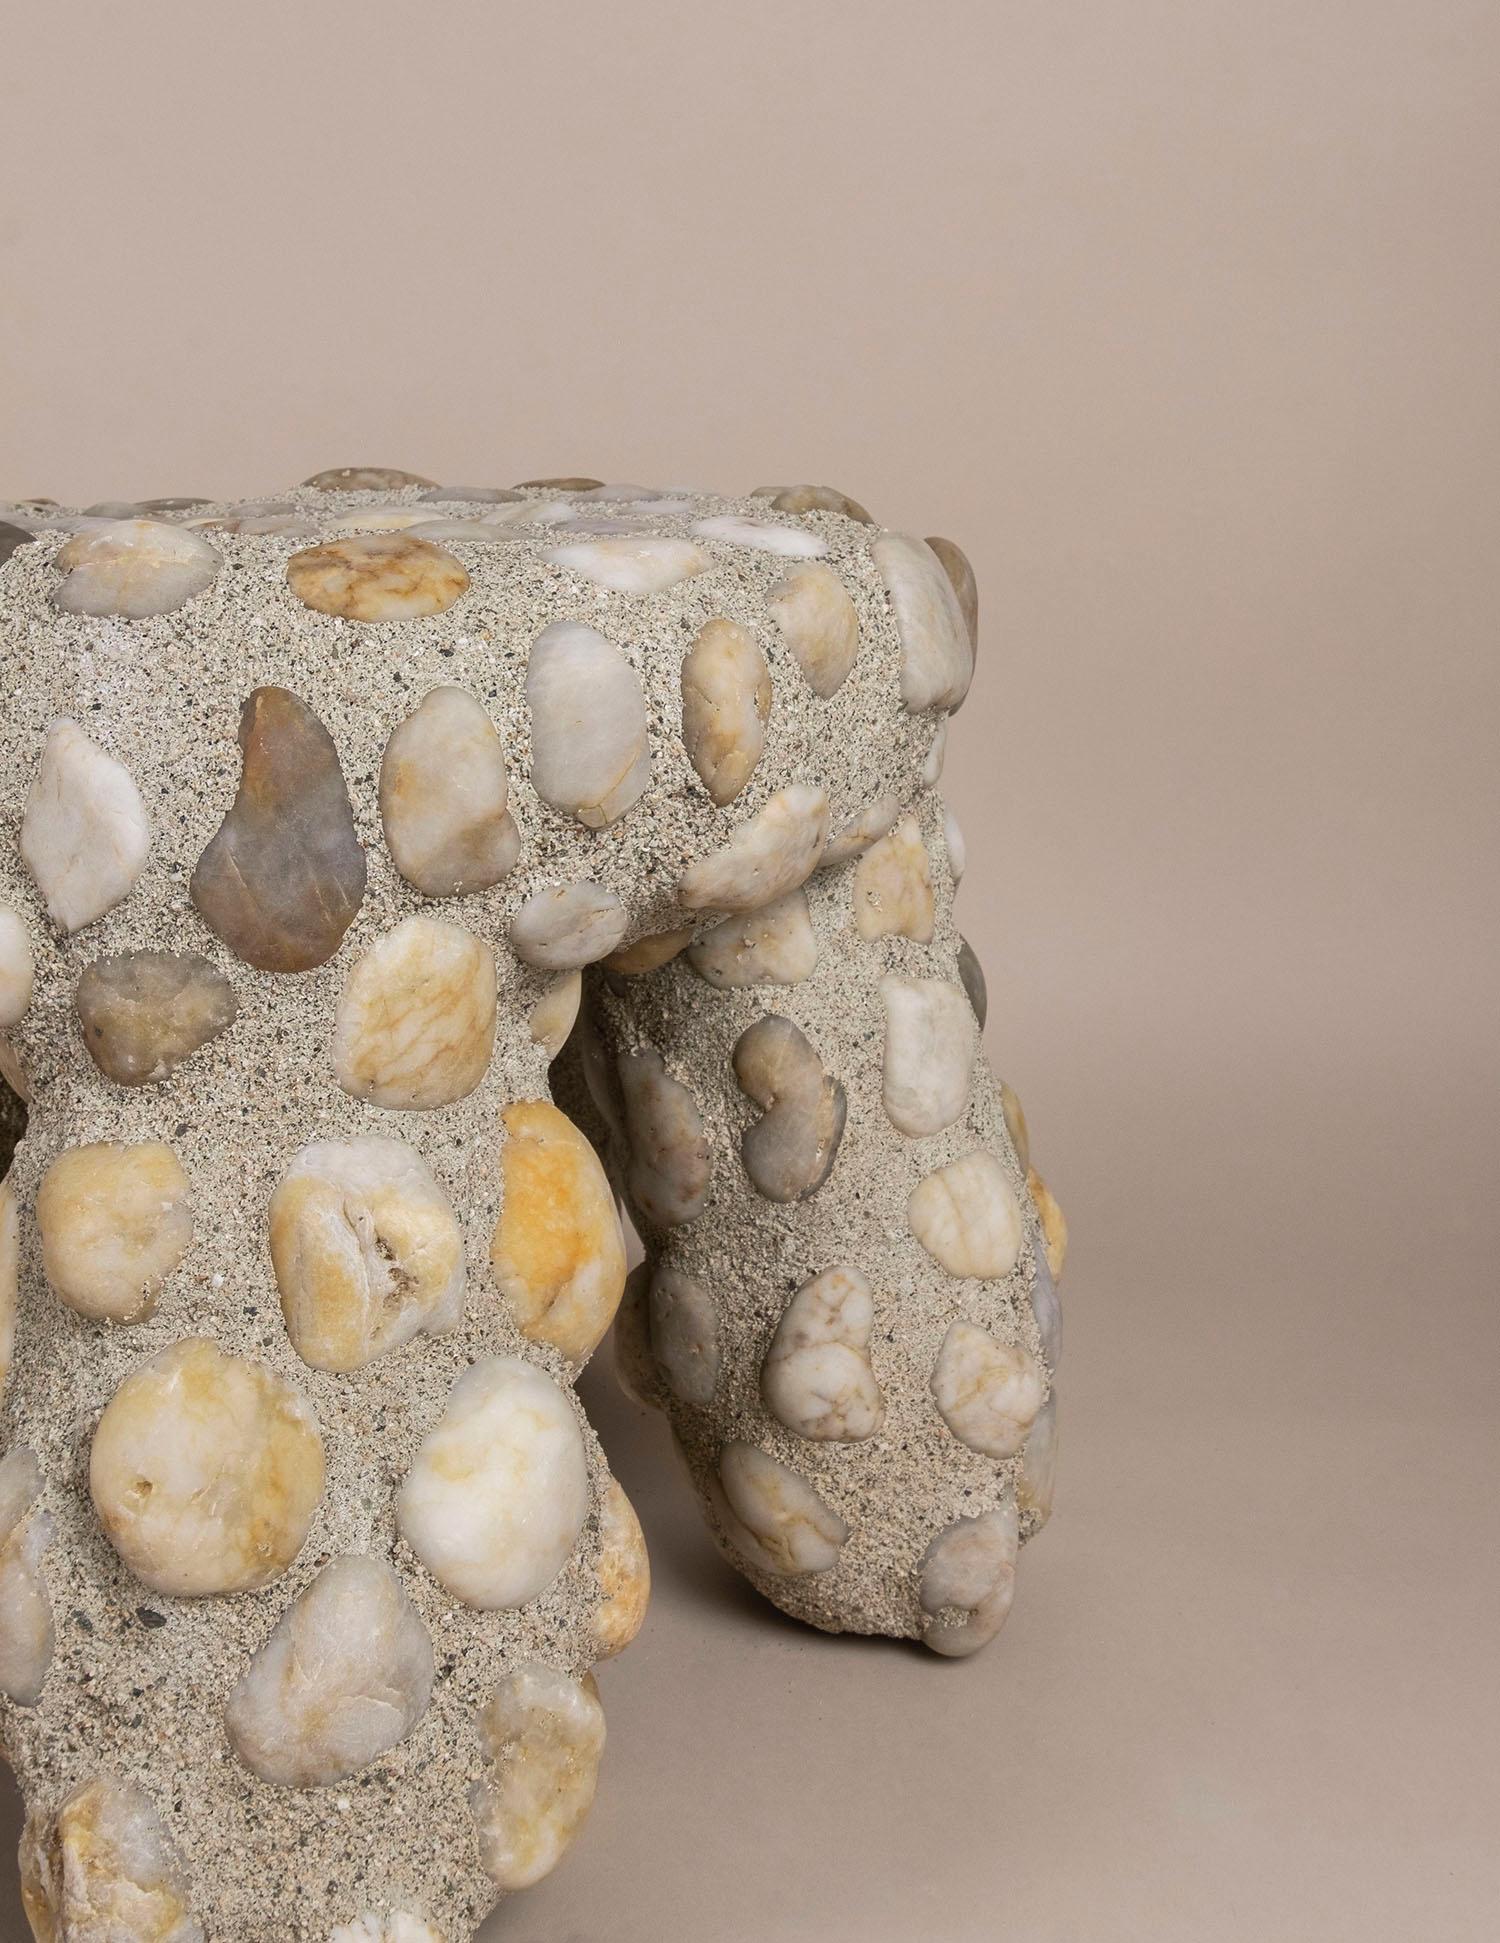 Der Masonry Tuffet Hocker besteht aus einem gewöhnlichen, spritzgegossenen Kinderhocker aus Kunststoff, der durch die Verkleidung mit Steinmauerwerk neu interpretiert wurde. Dieses Werk stellt die persönliche Wertschätzung des Künstlers für die